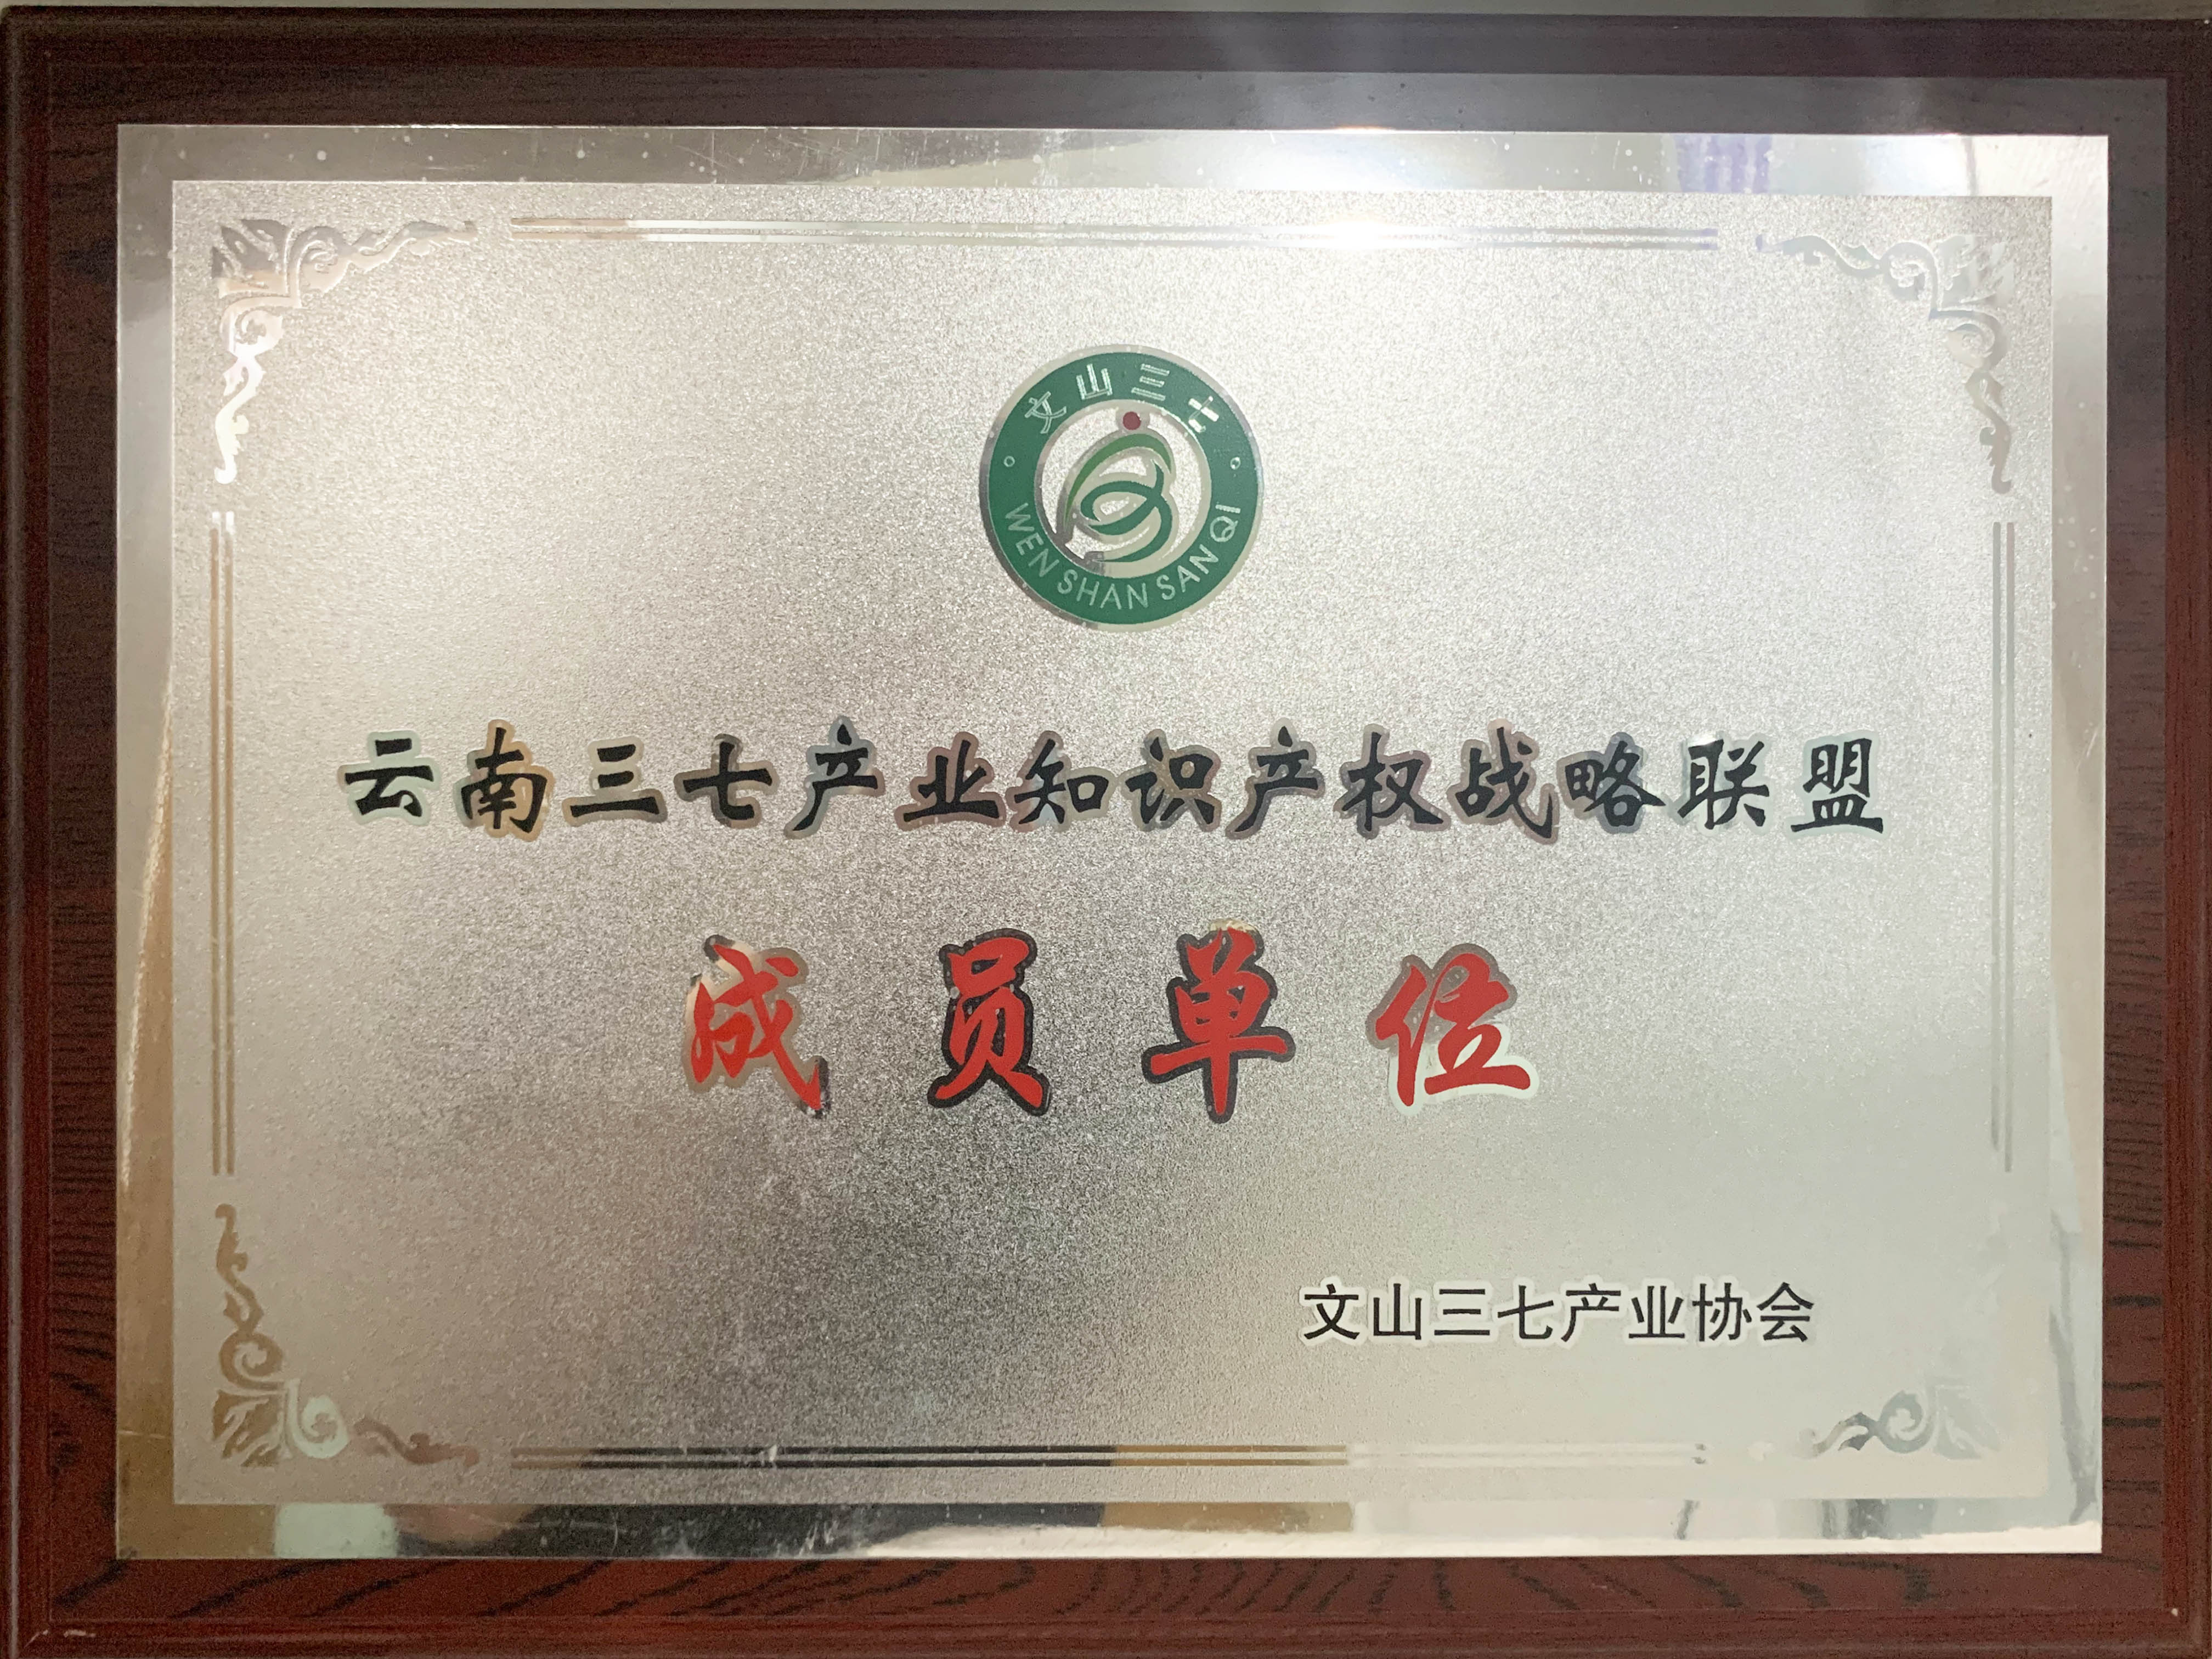 云南三七产业知识产权战略联盟成员单位